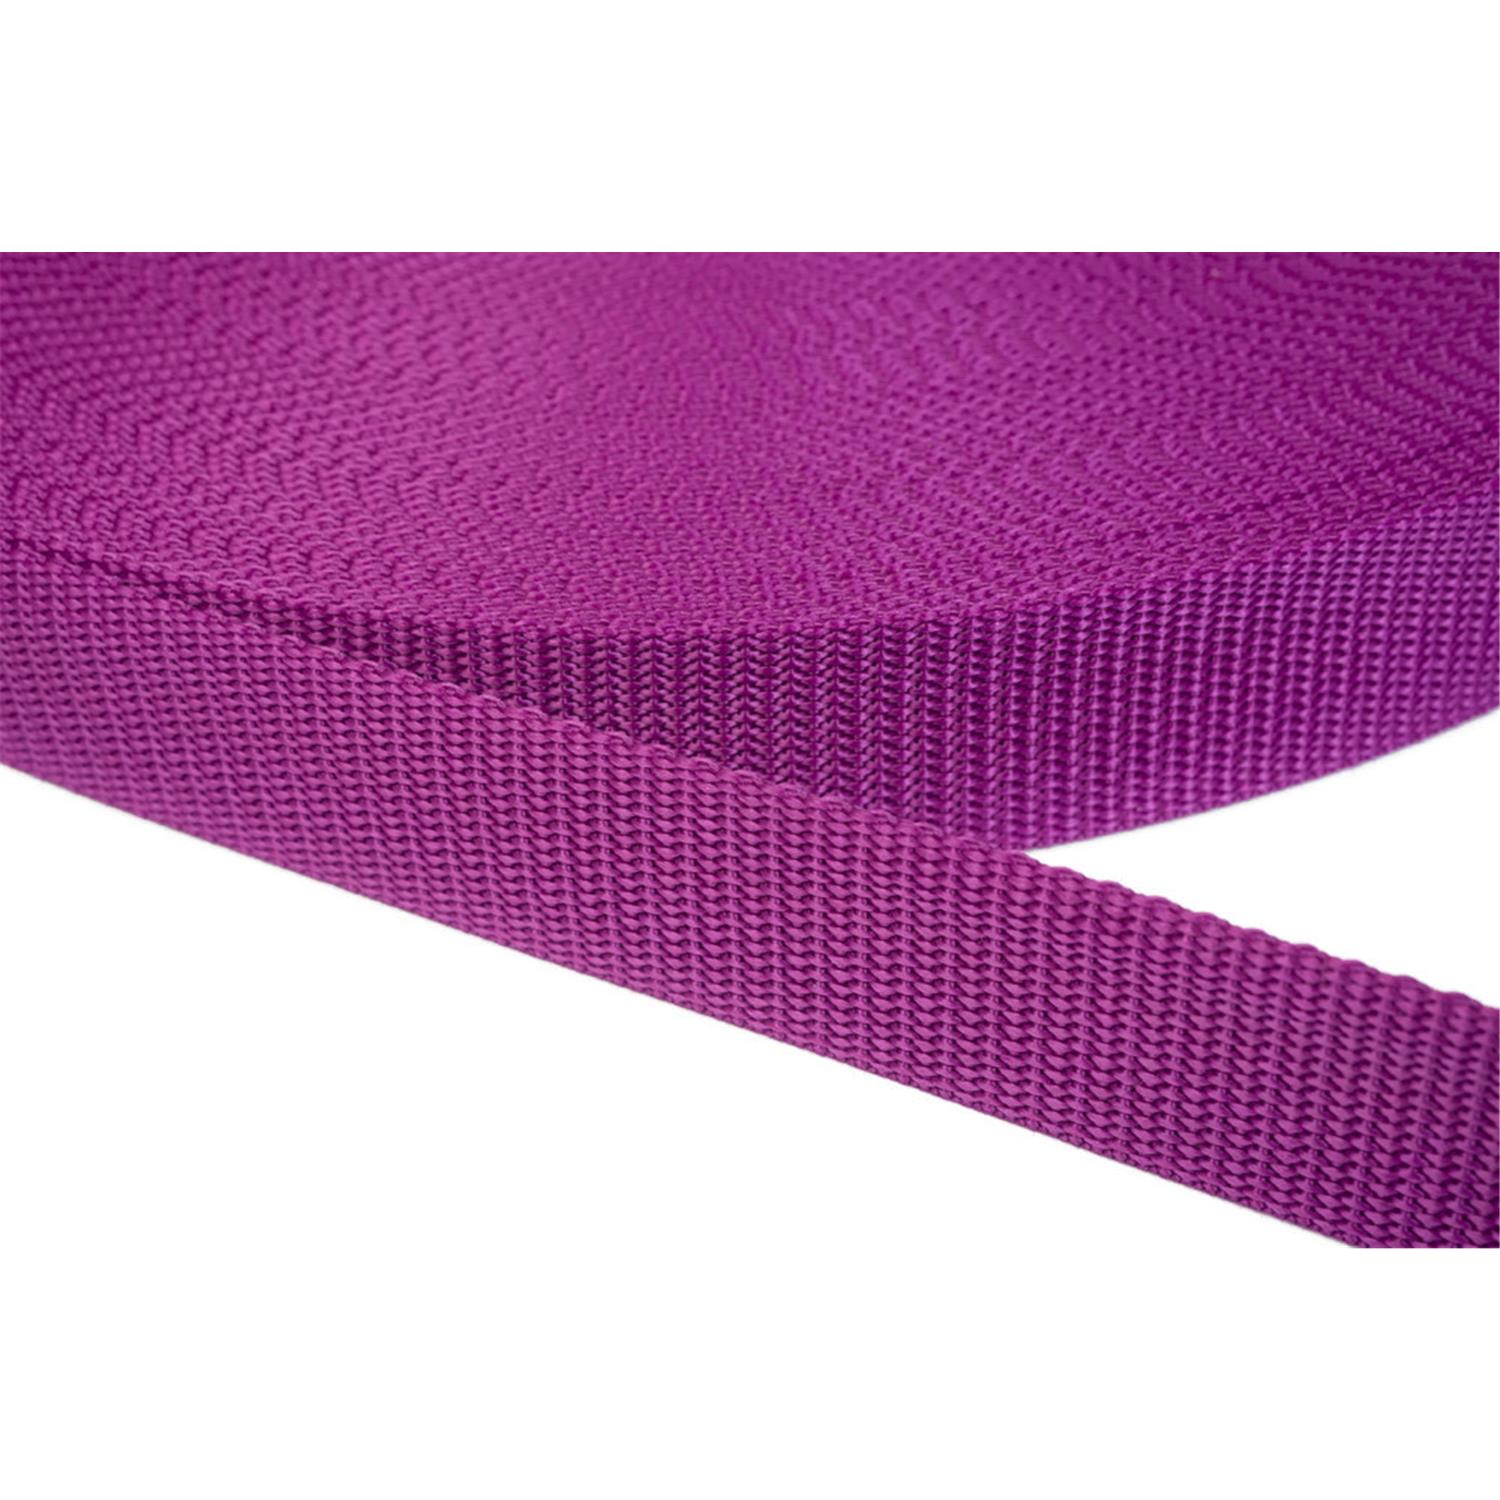 Gurtband 10mm breit aus Polypropylen in 41 Farben 22 - violettrot 12 Meter